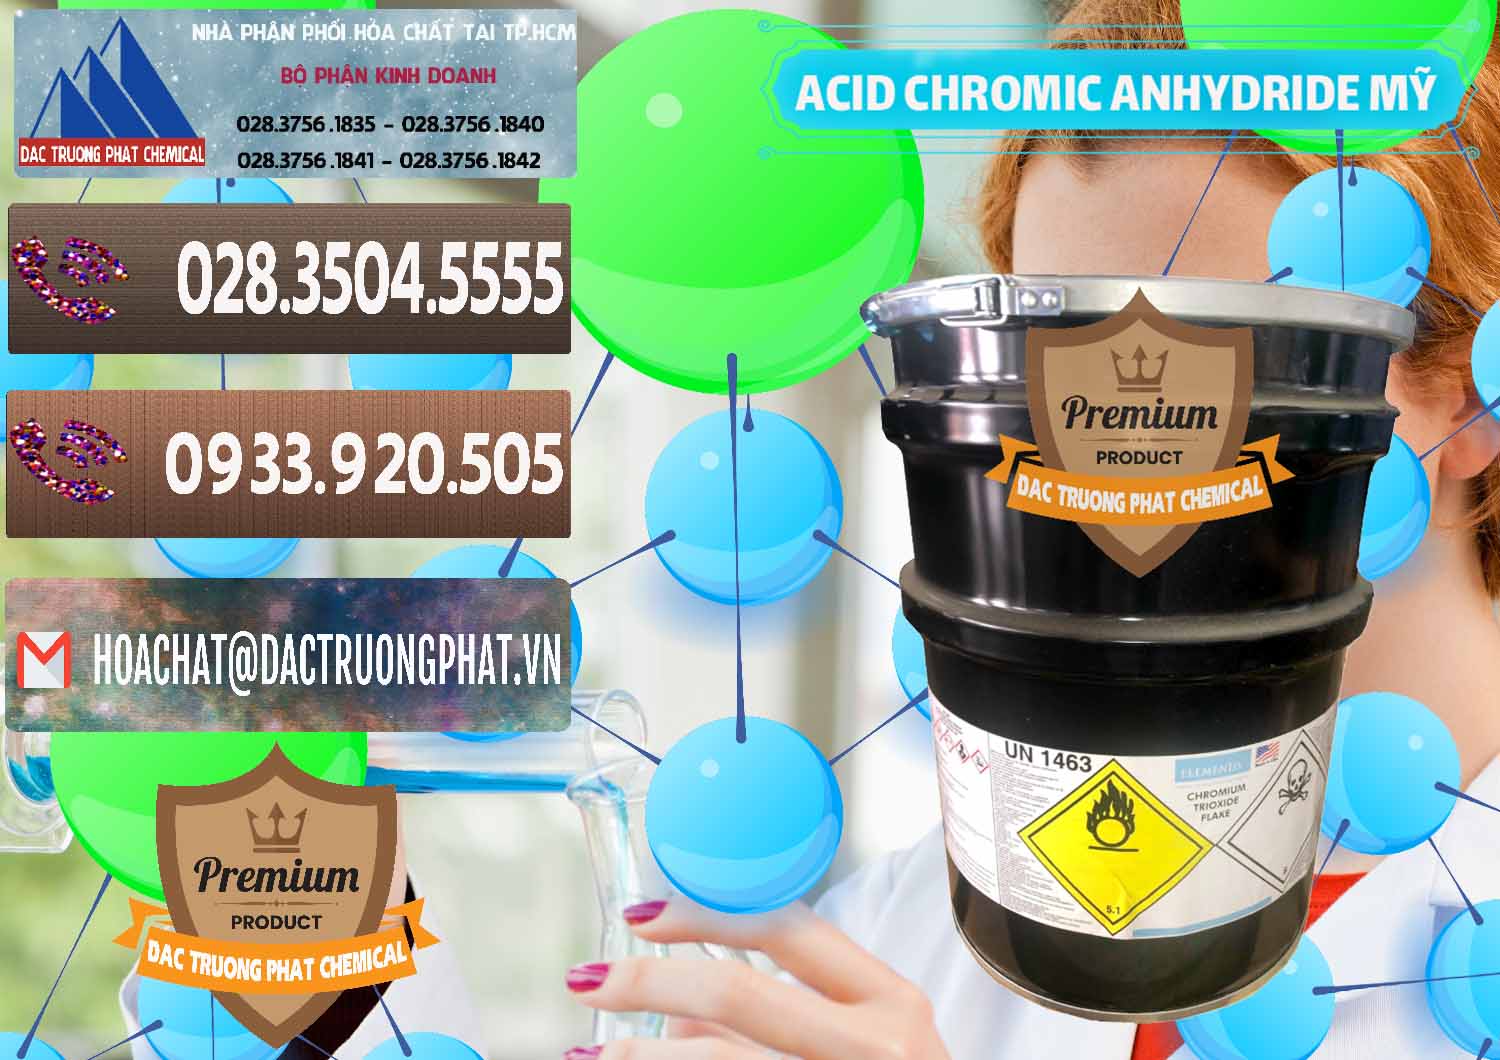 Đơn vị chuyên kinh doanh & bán Acid Chromic Anhydride - Cromic CRO3 USA Mỹ - 0364 - Chuyên bán ( cung cấp ) hóa chất tại TP.HCM - hoachatviet.net